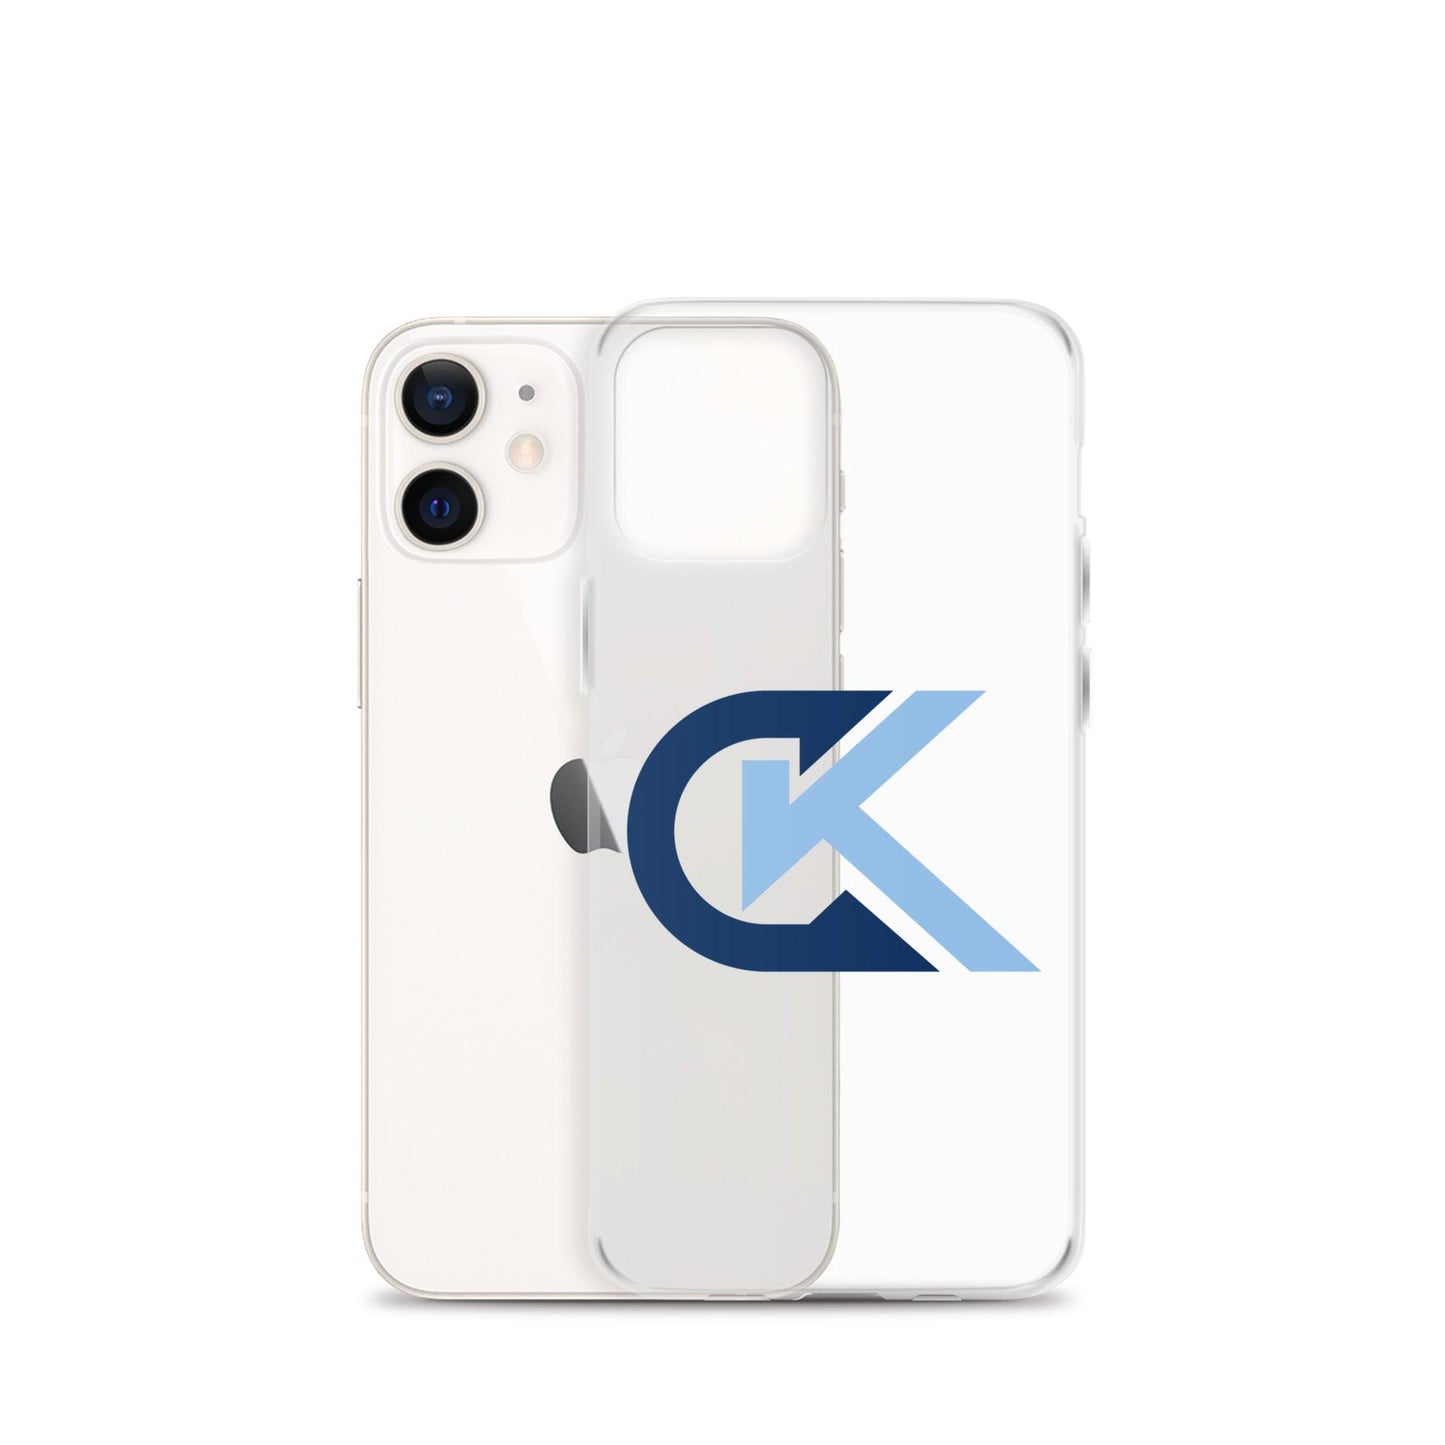 Corey Kluber "Elite" iPhone Case - Fan Arch